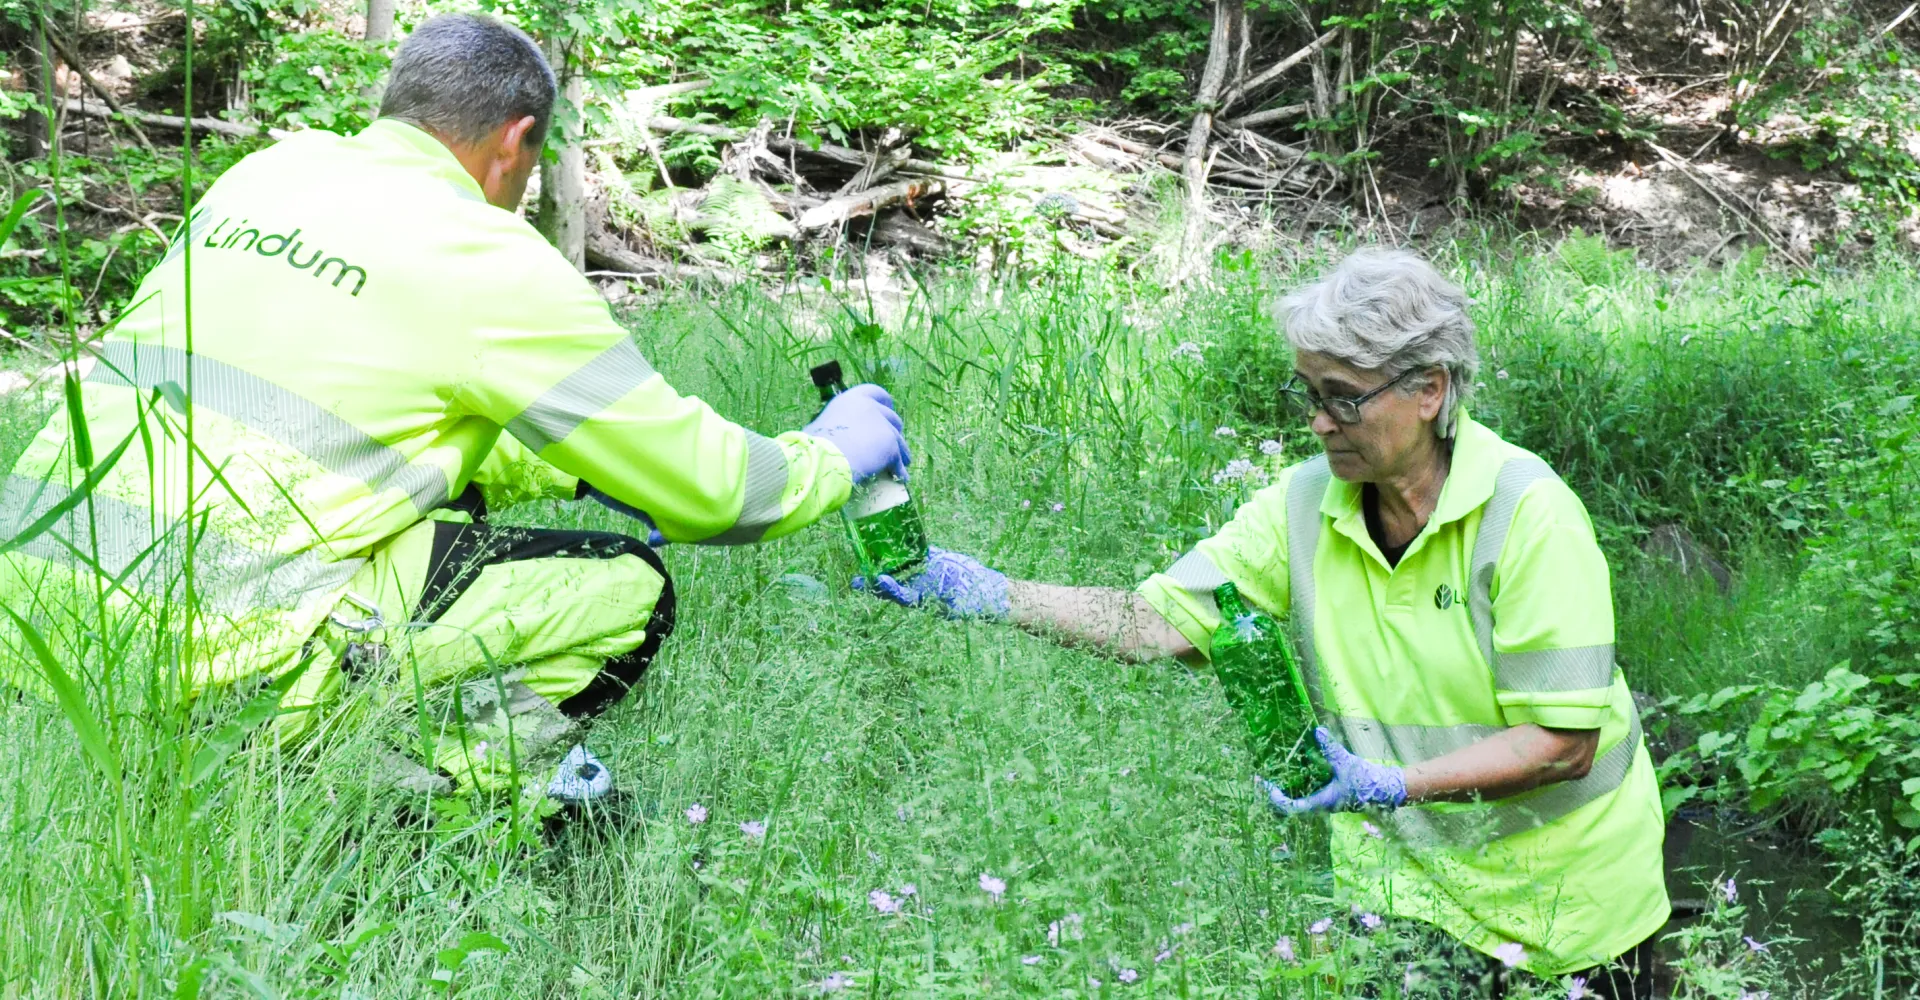 To Lindum-medarbeidere tar tuinemessige vannprøver av bekker og kummer